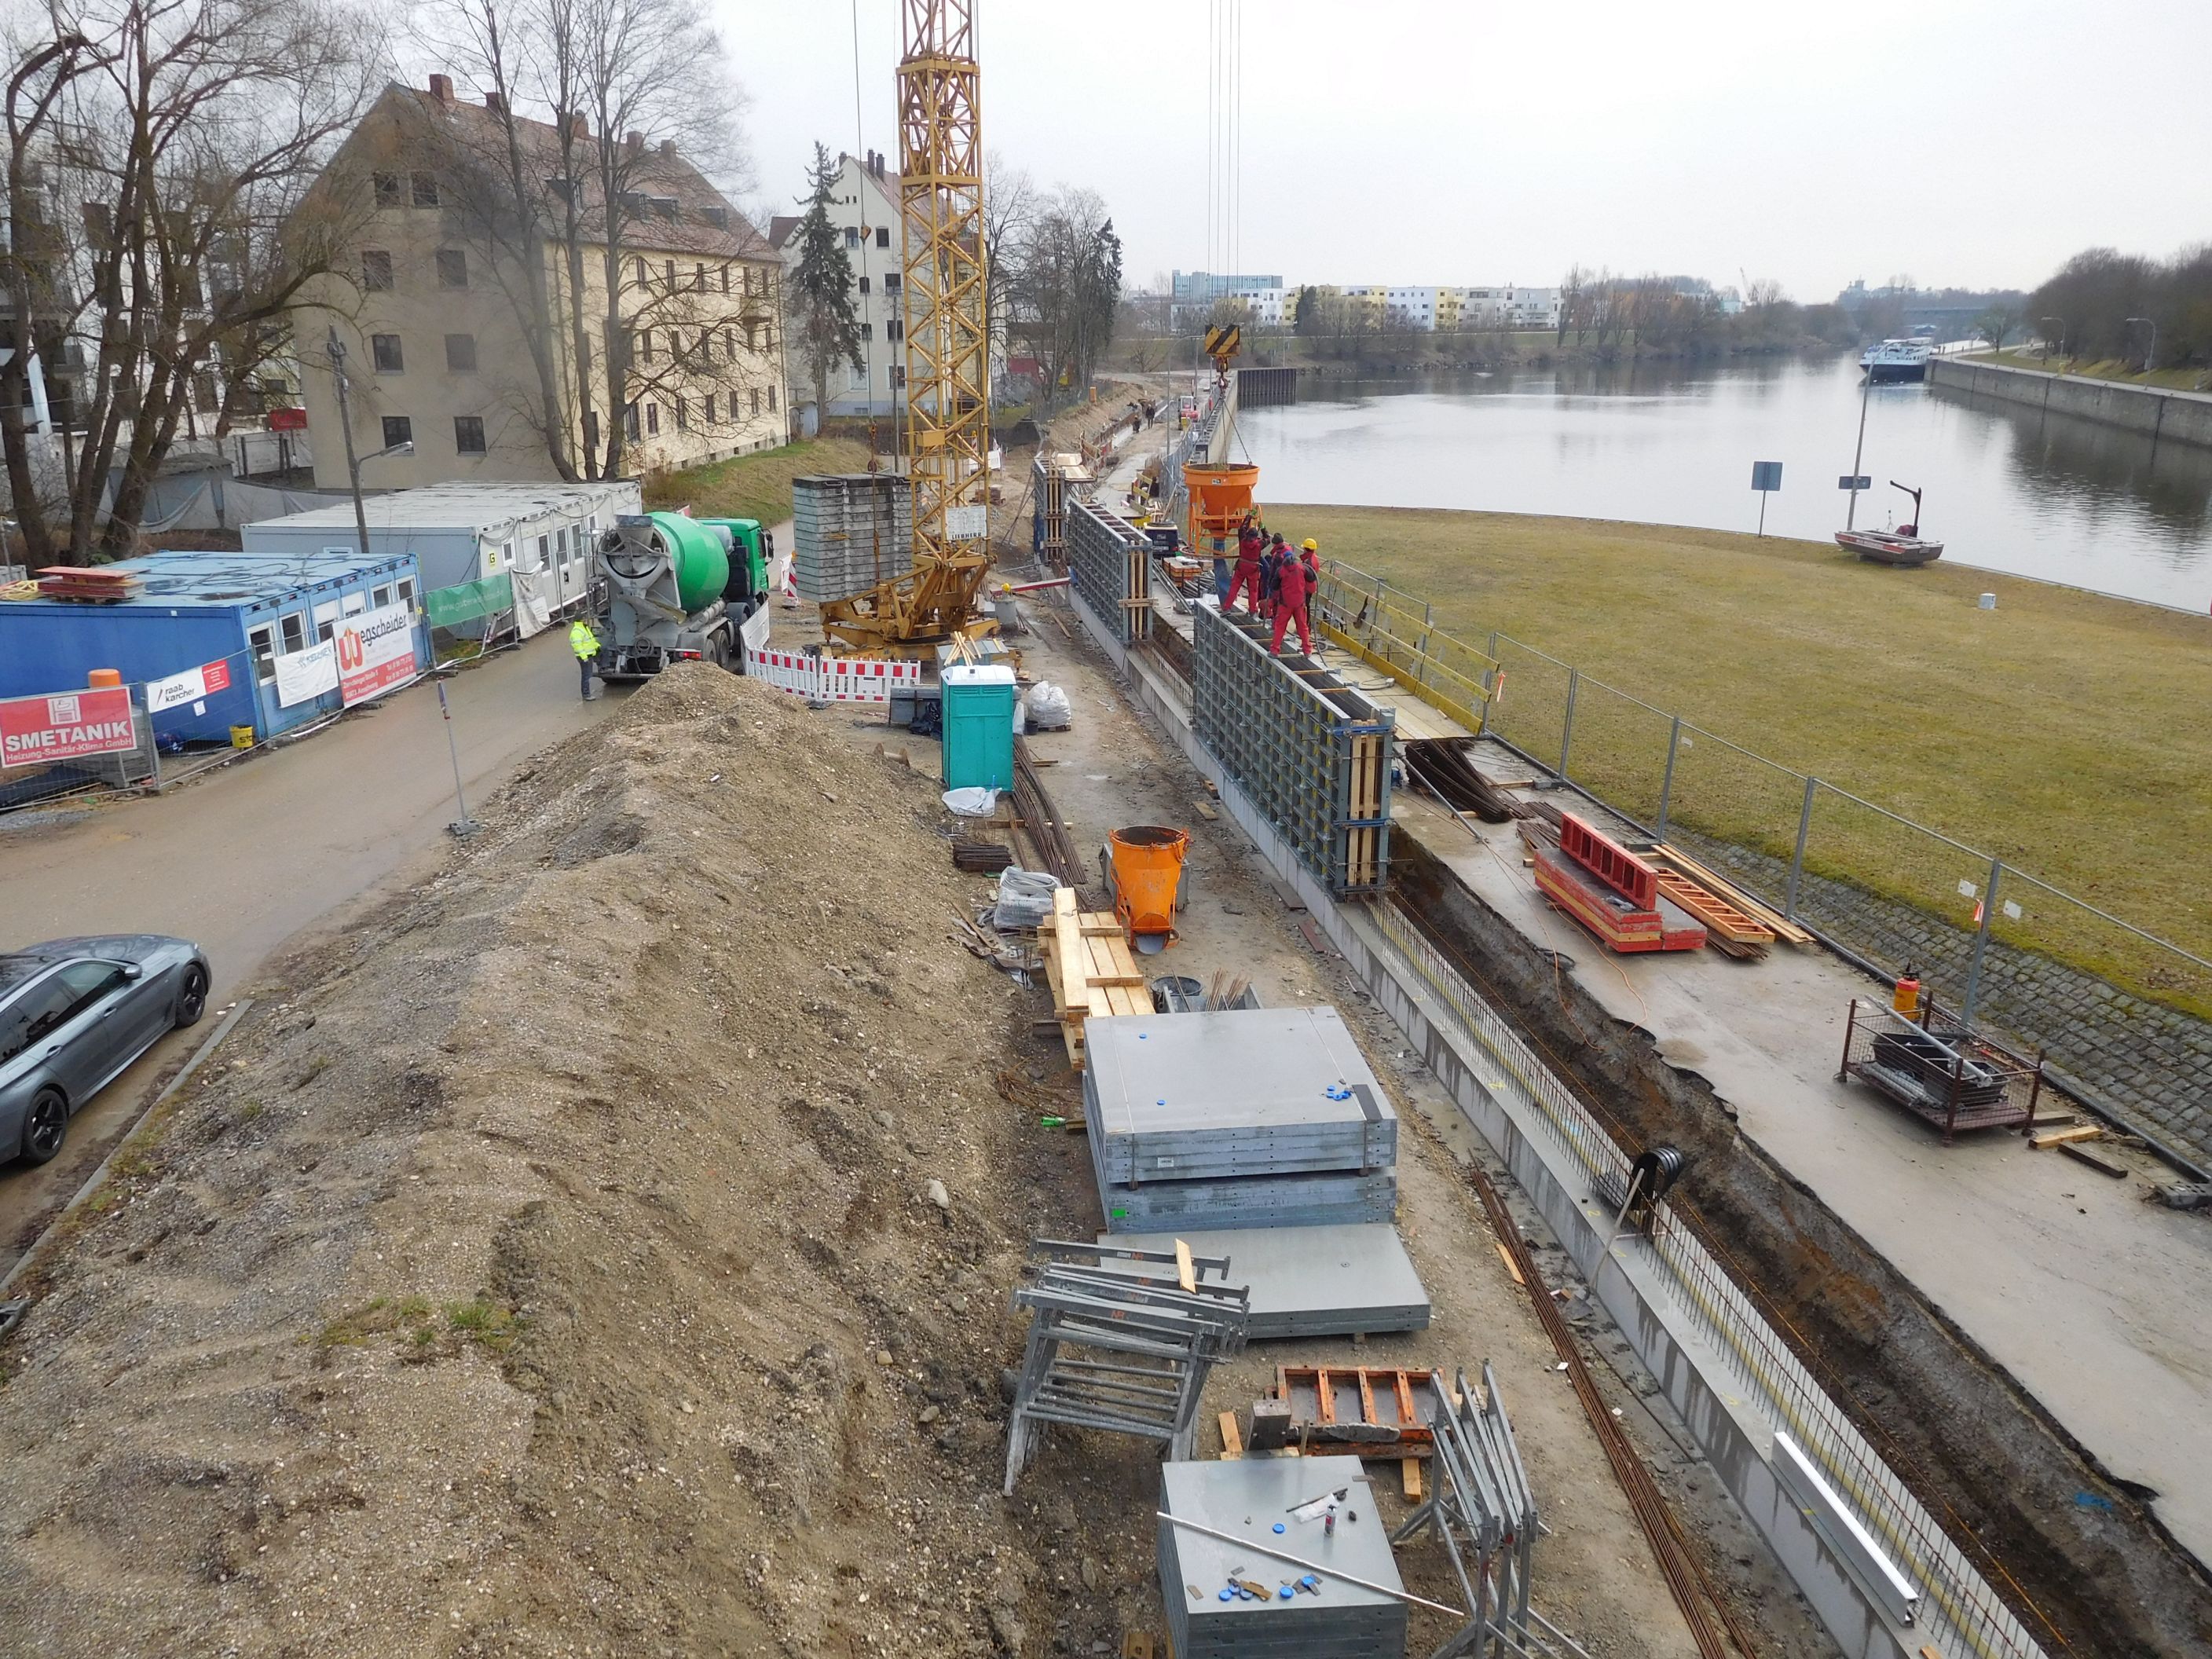 Überblick auf die Baustelle, links Bebauung, Baucontainer und ein Erdhaufen, rechts die Schalungsbretter, die Hochwasserschutzmauer und die Donau, im Hintergrund ein Kran